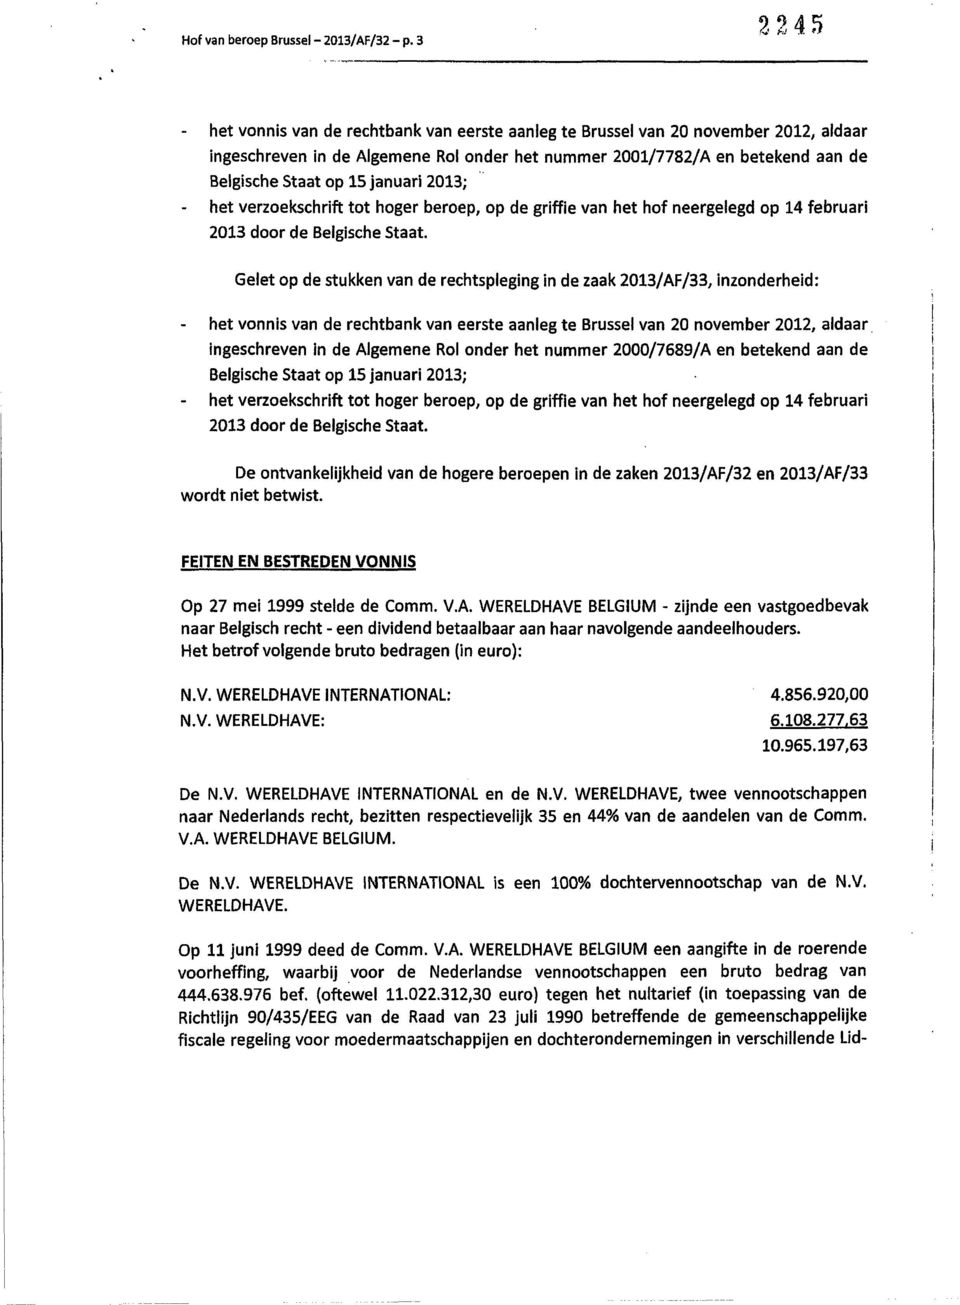 januari 2013; het verzoekschrift tot hoger beroep, op de griffie van het hof neergelegd op 14 februari 2013 door de Belgische Staat.